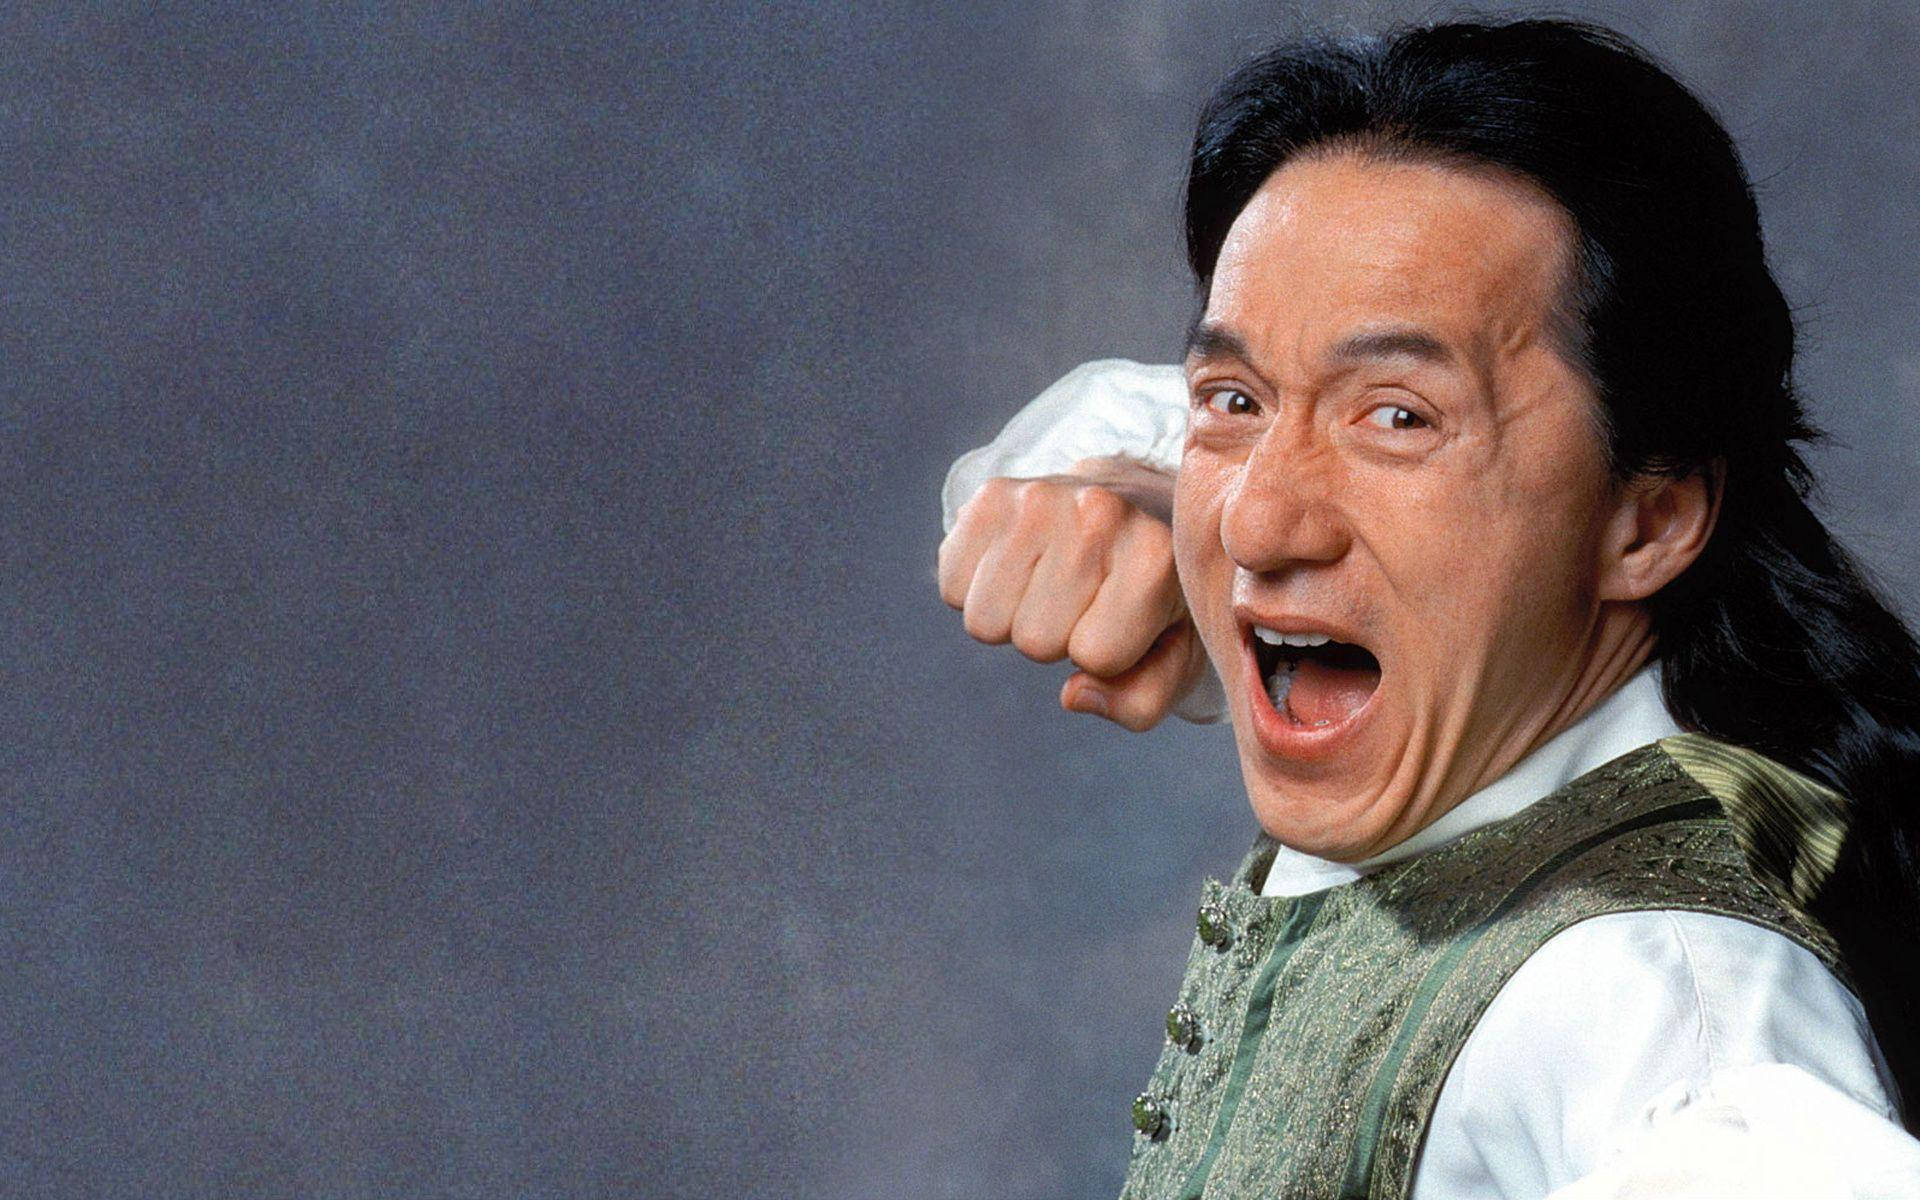 Jackie Chan Wallpaper